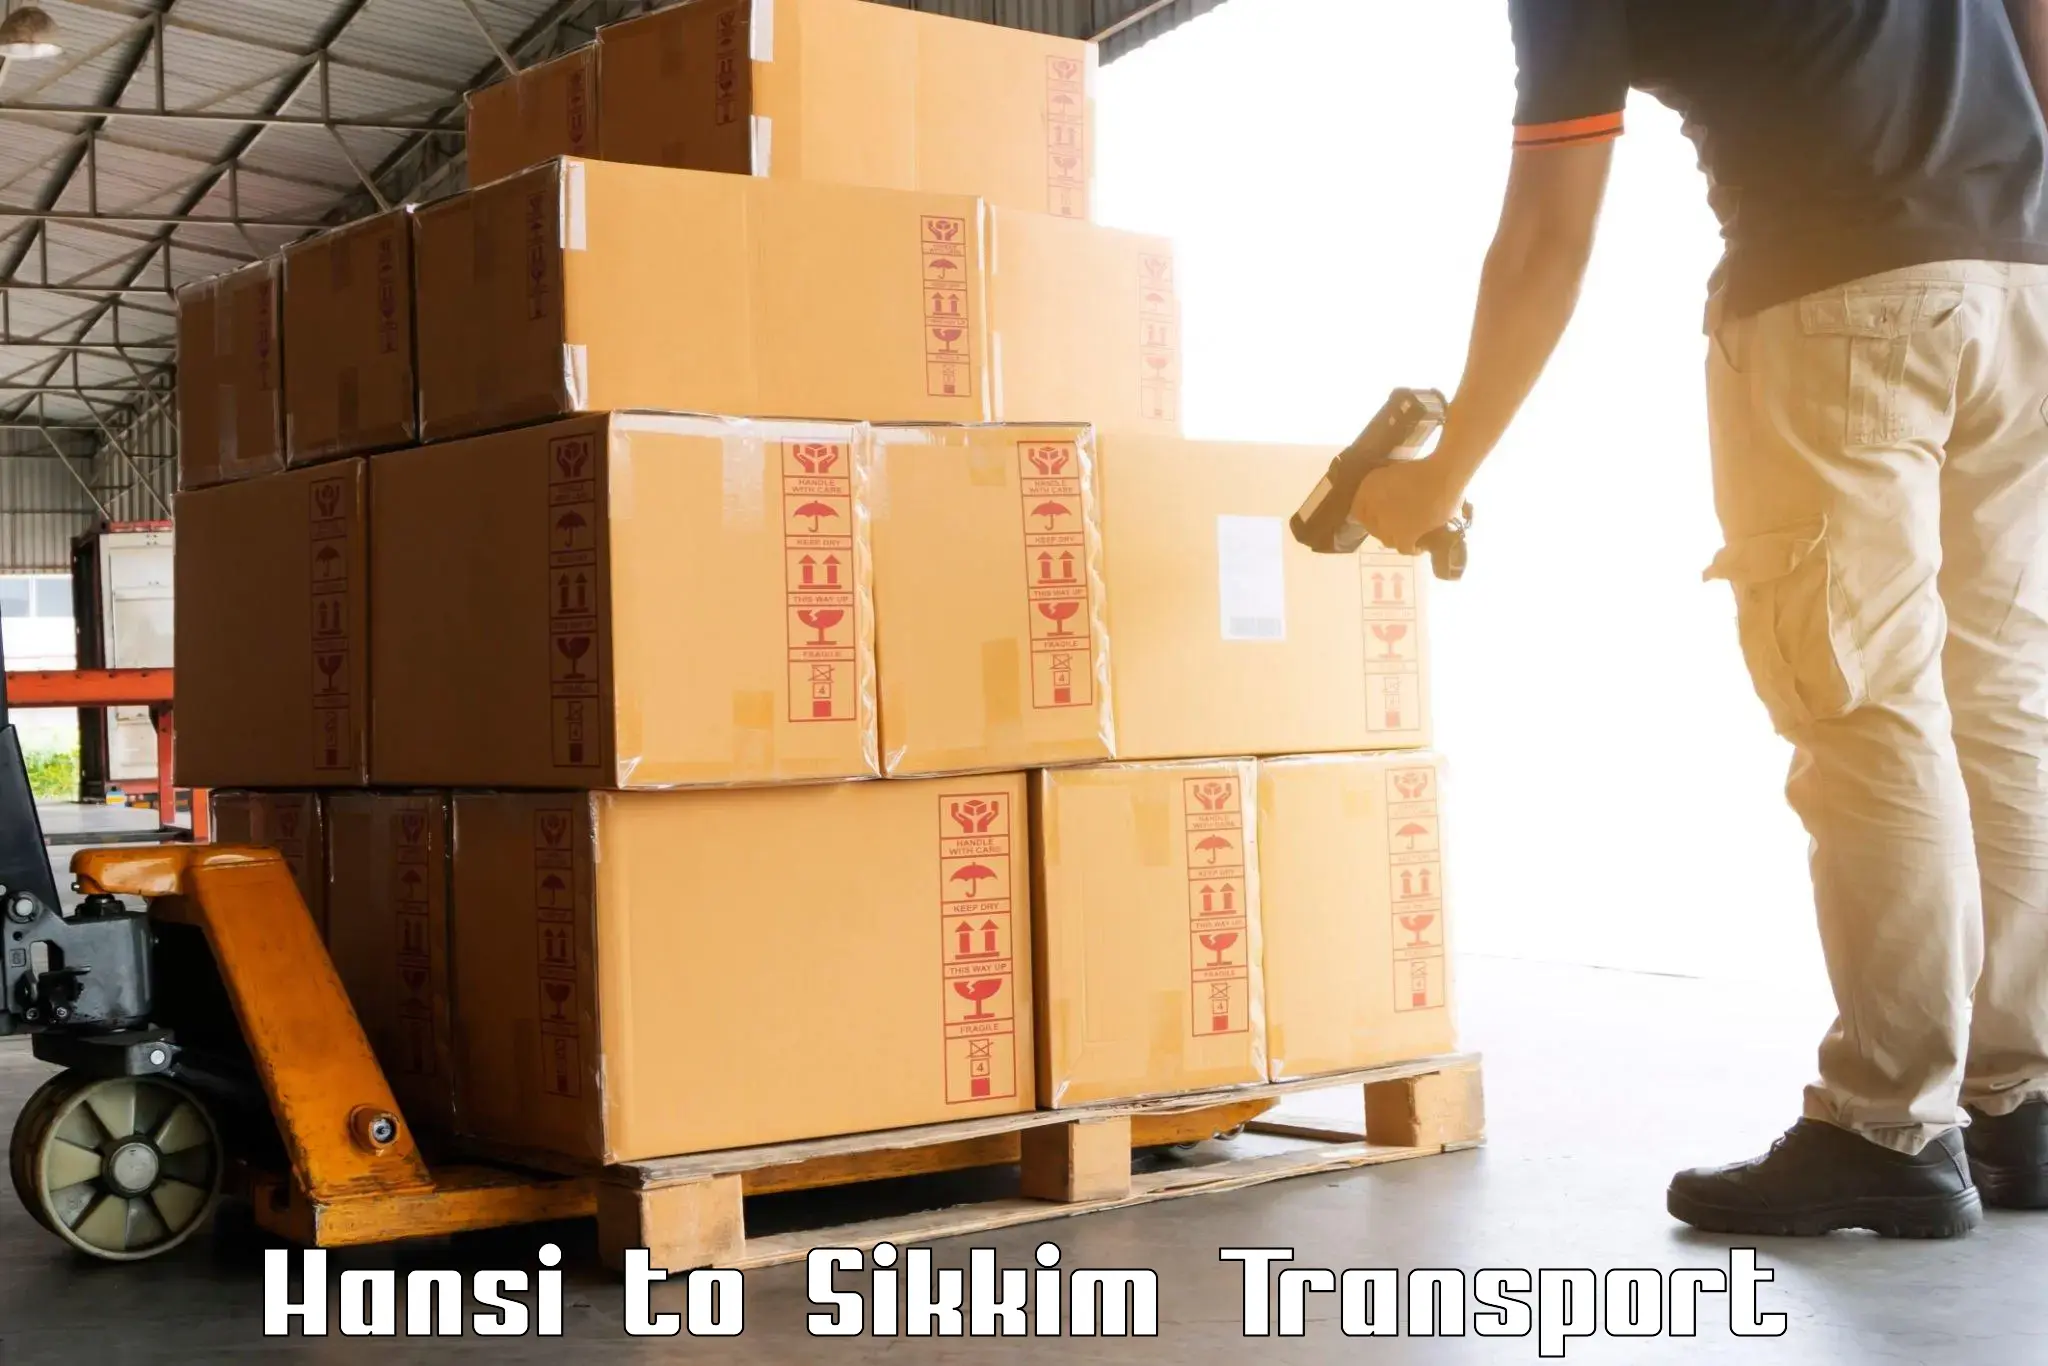 Transport in sharing Hansi to NIT Sikkim